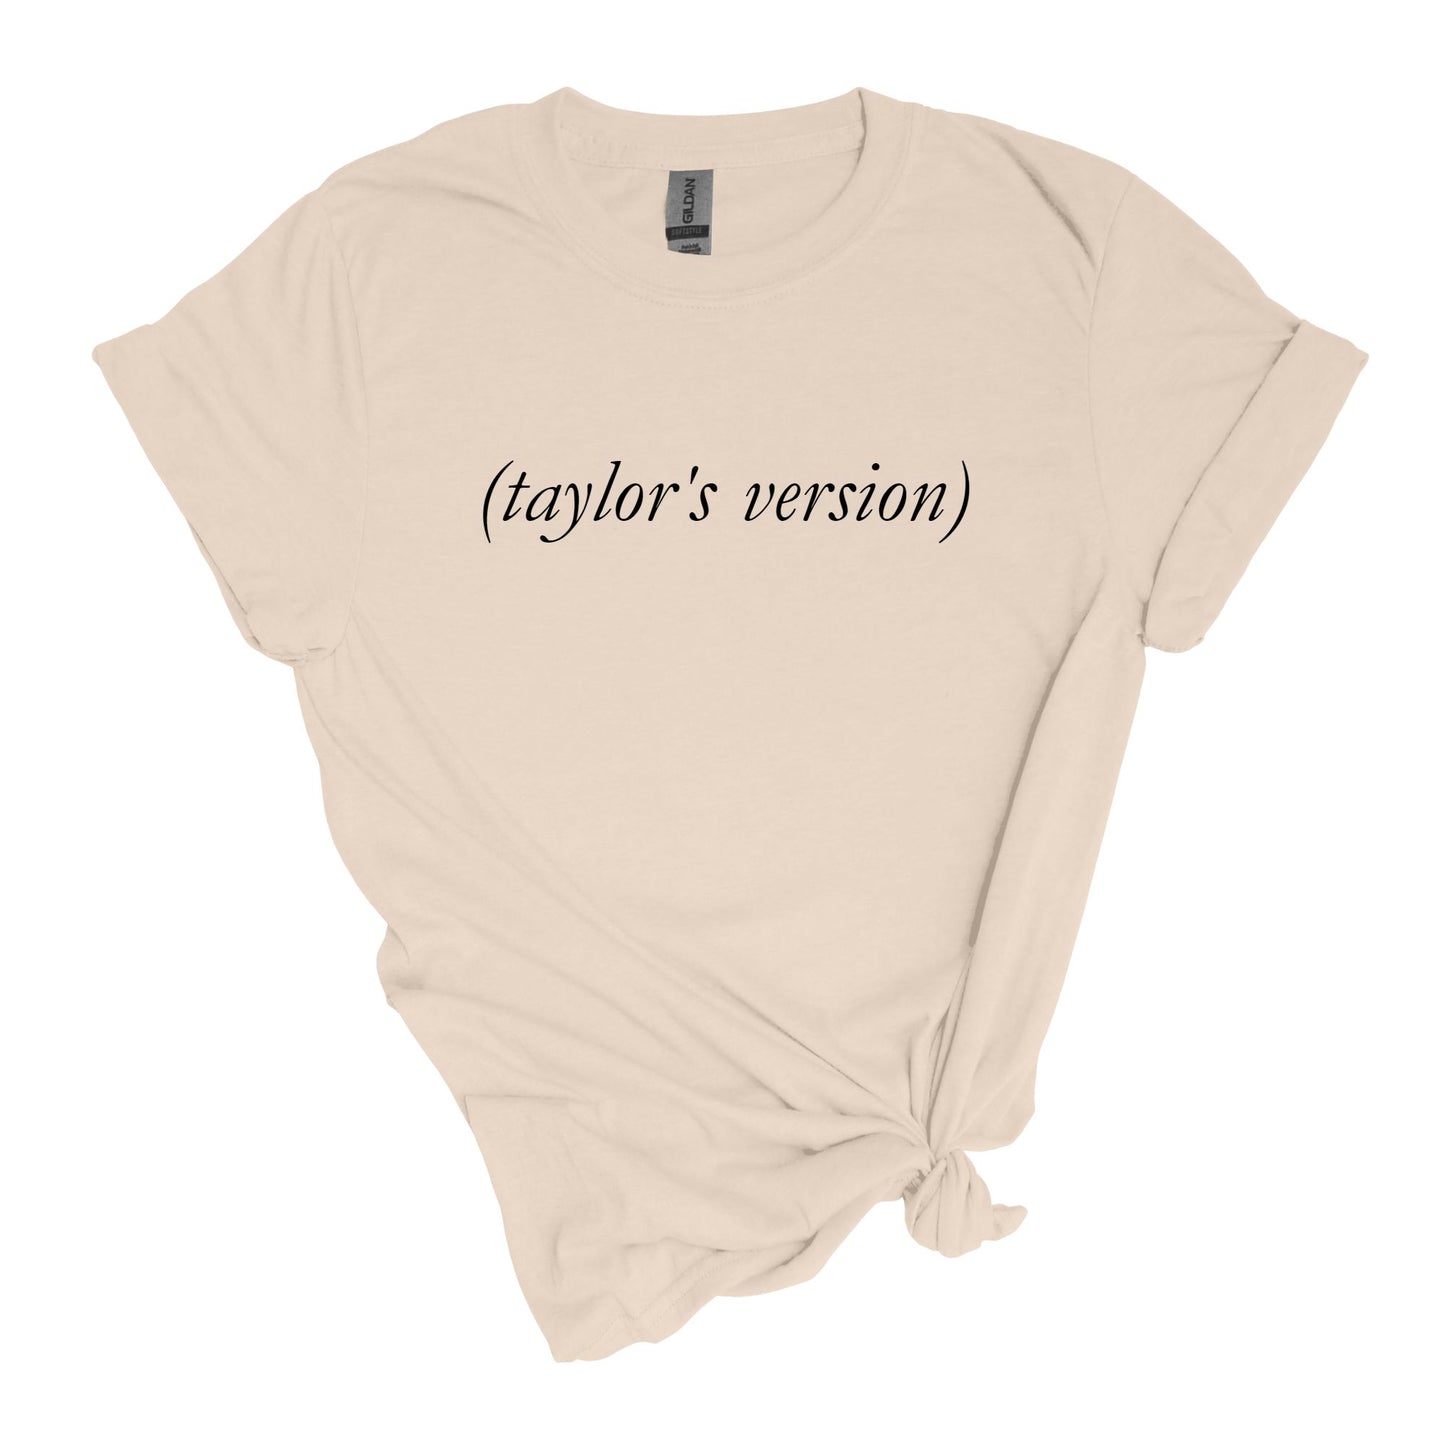 Versión de Taylor - Camiseta Swifty Unisex 